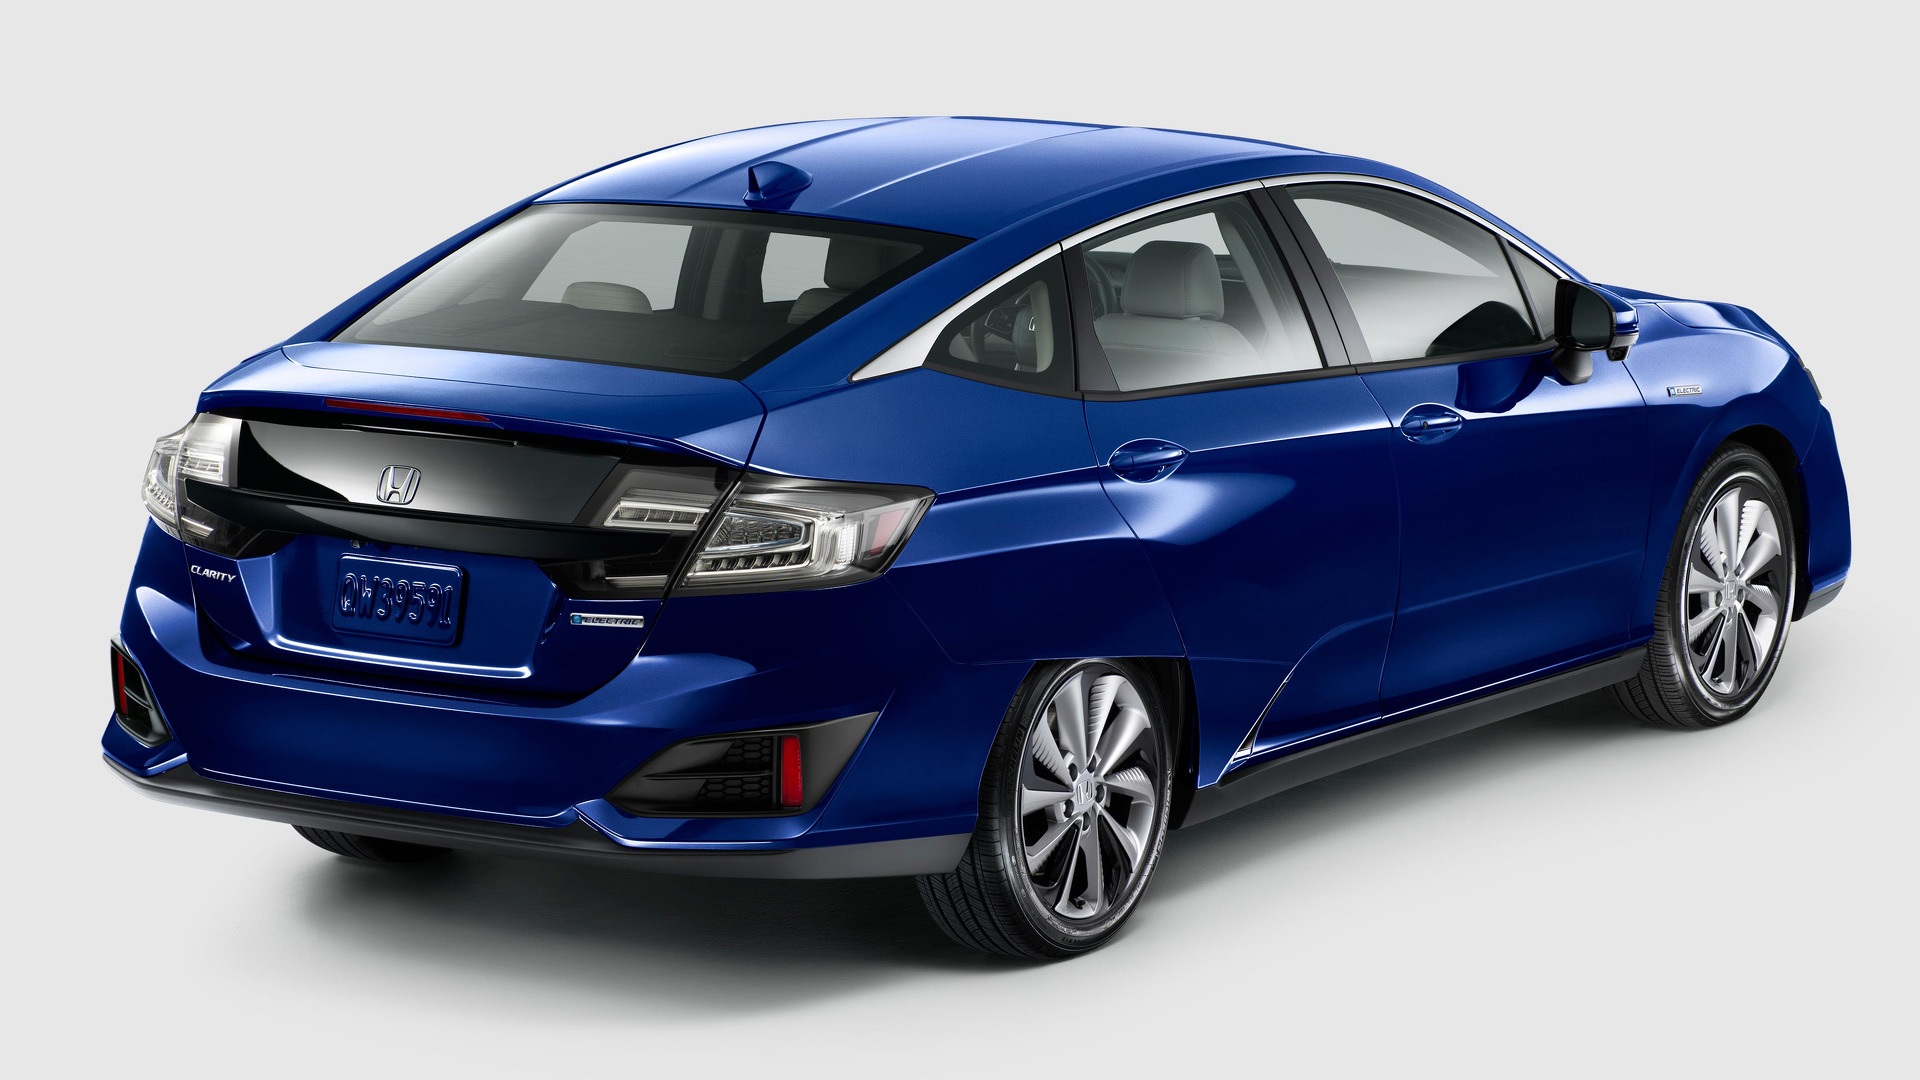 Honda 2018 yılında 2 adet elektrikli araç satışa sunmayı planlıyor